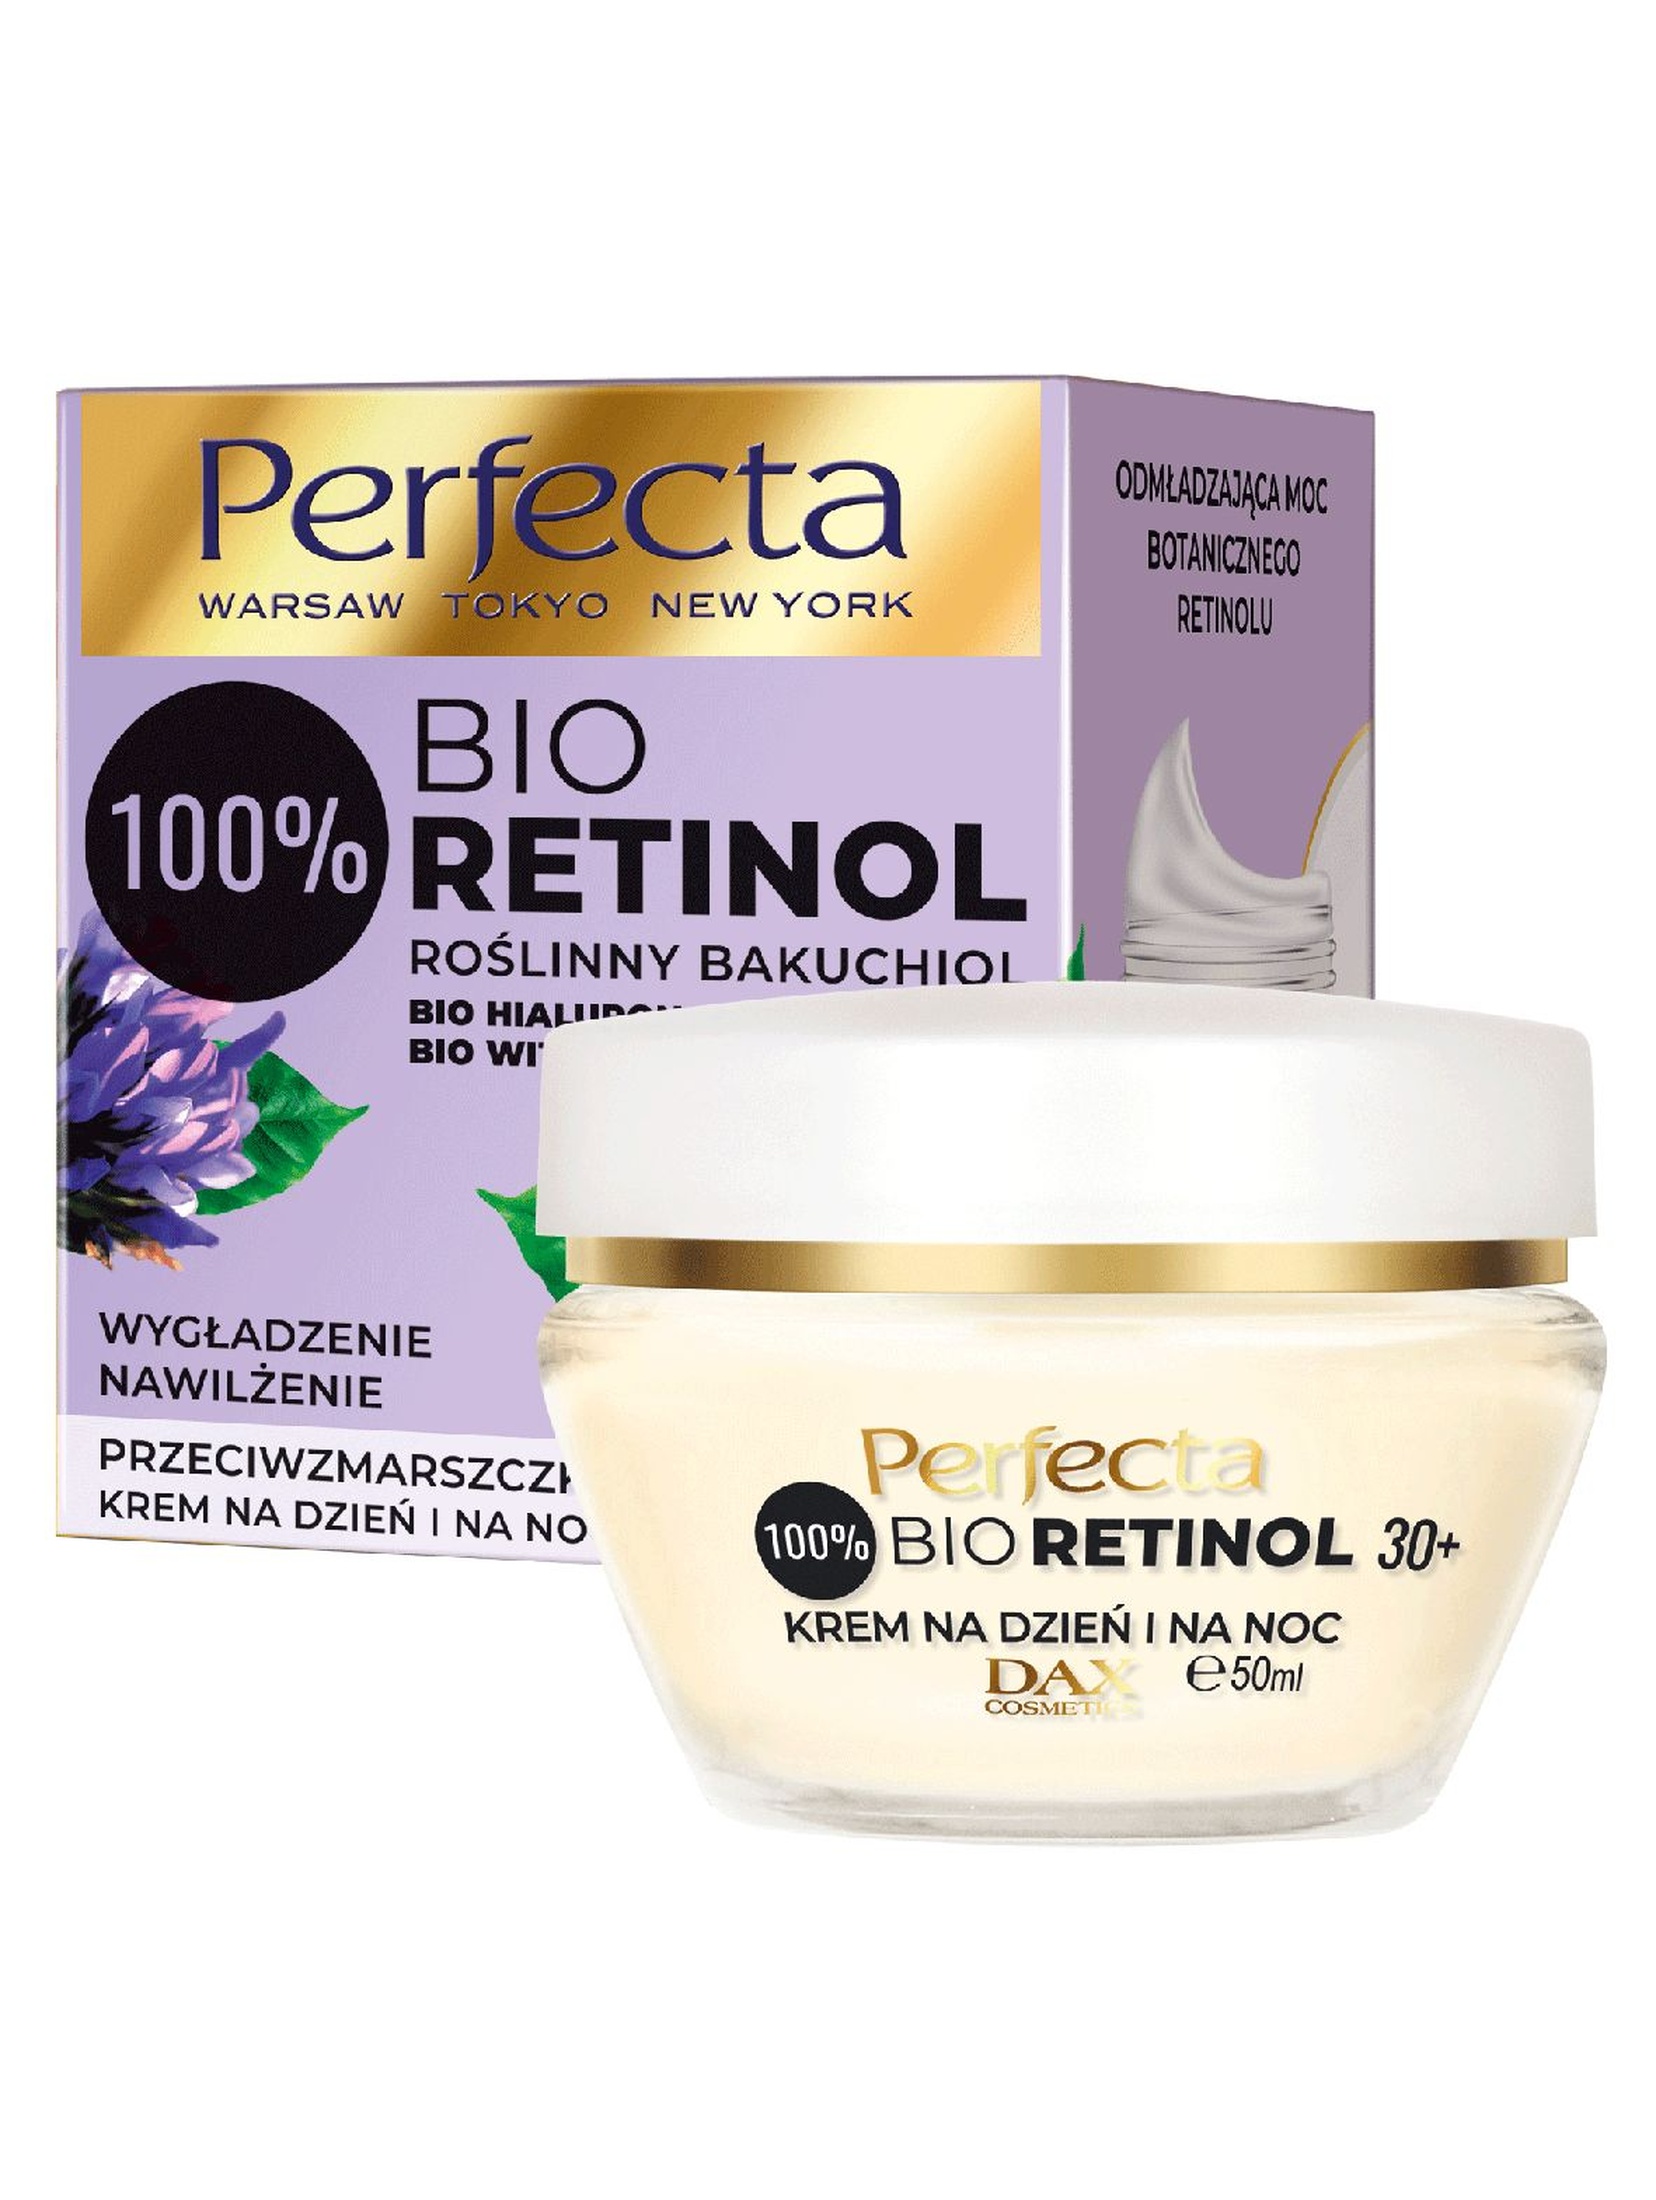 Perfecta Bio Retinol, krem do twarzy na dzień i na noc 30+, 50 ml